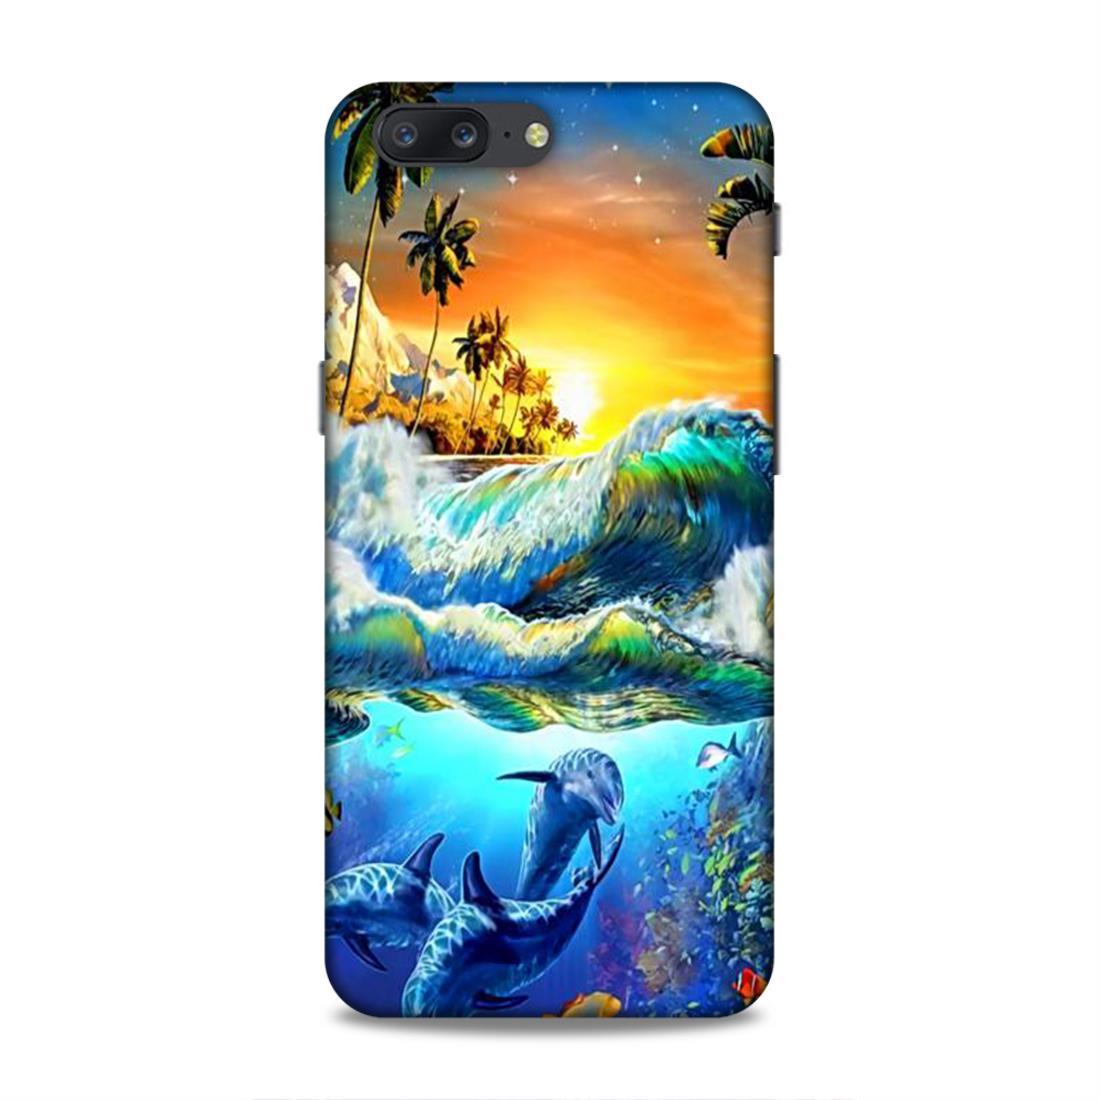 Sunrise Art OnePlus 5 Phone Cover Case